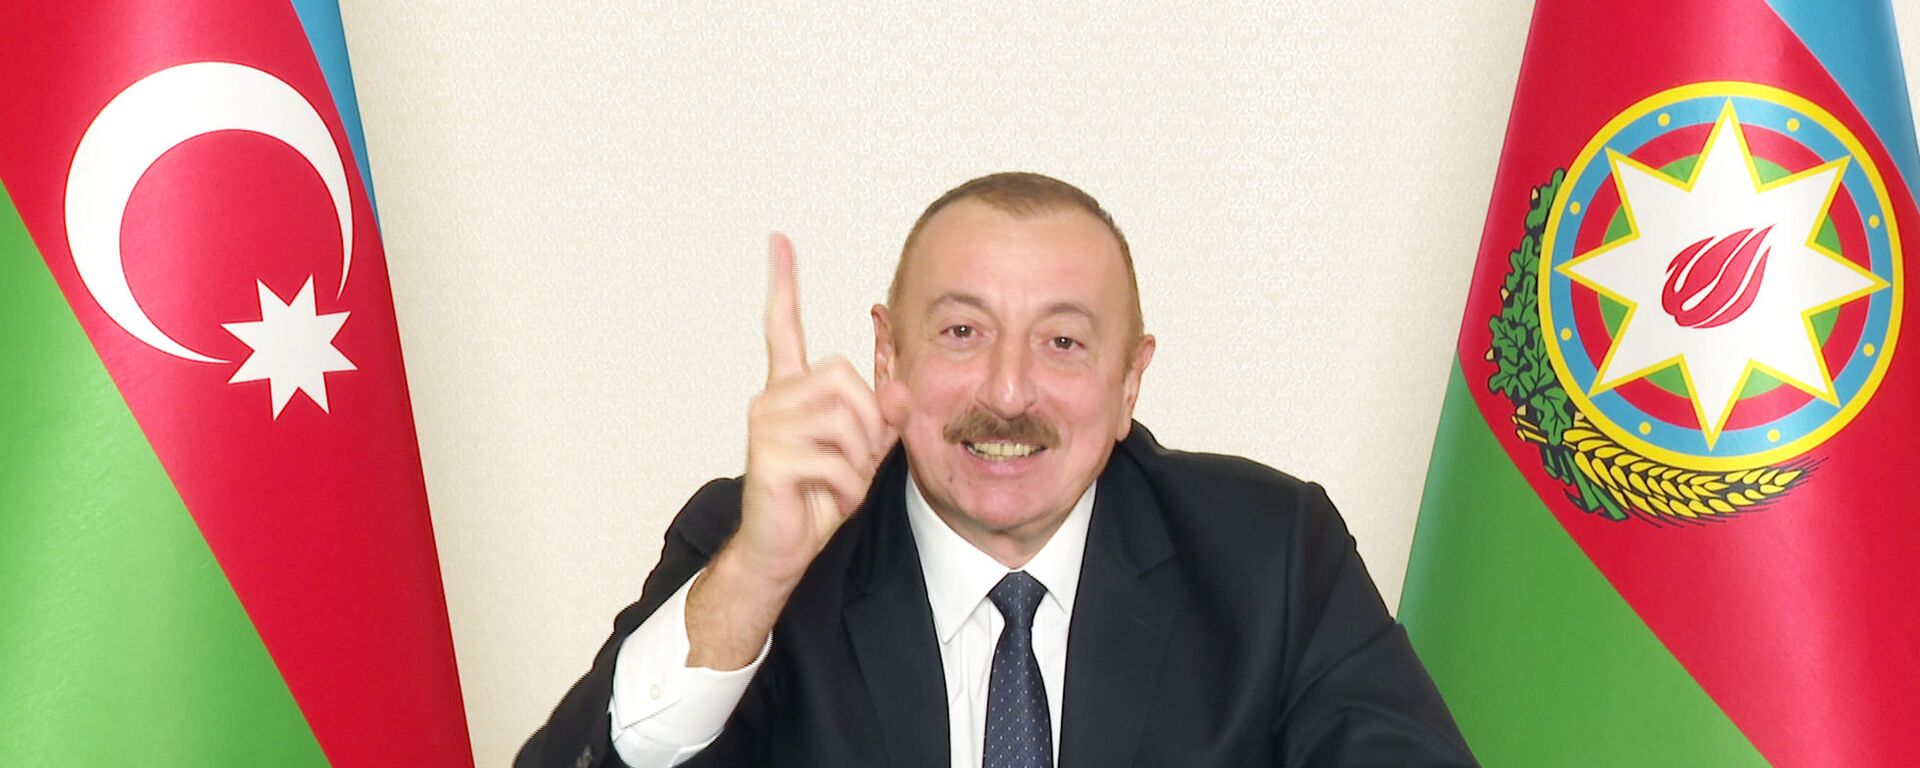 Президент Ильхам Алиев во время обращения к народу - Sputnik Азербайджан, 1920, 10.11.2020